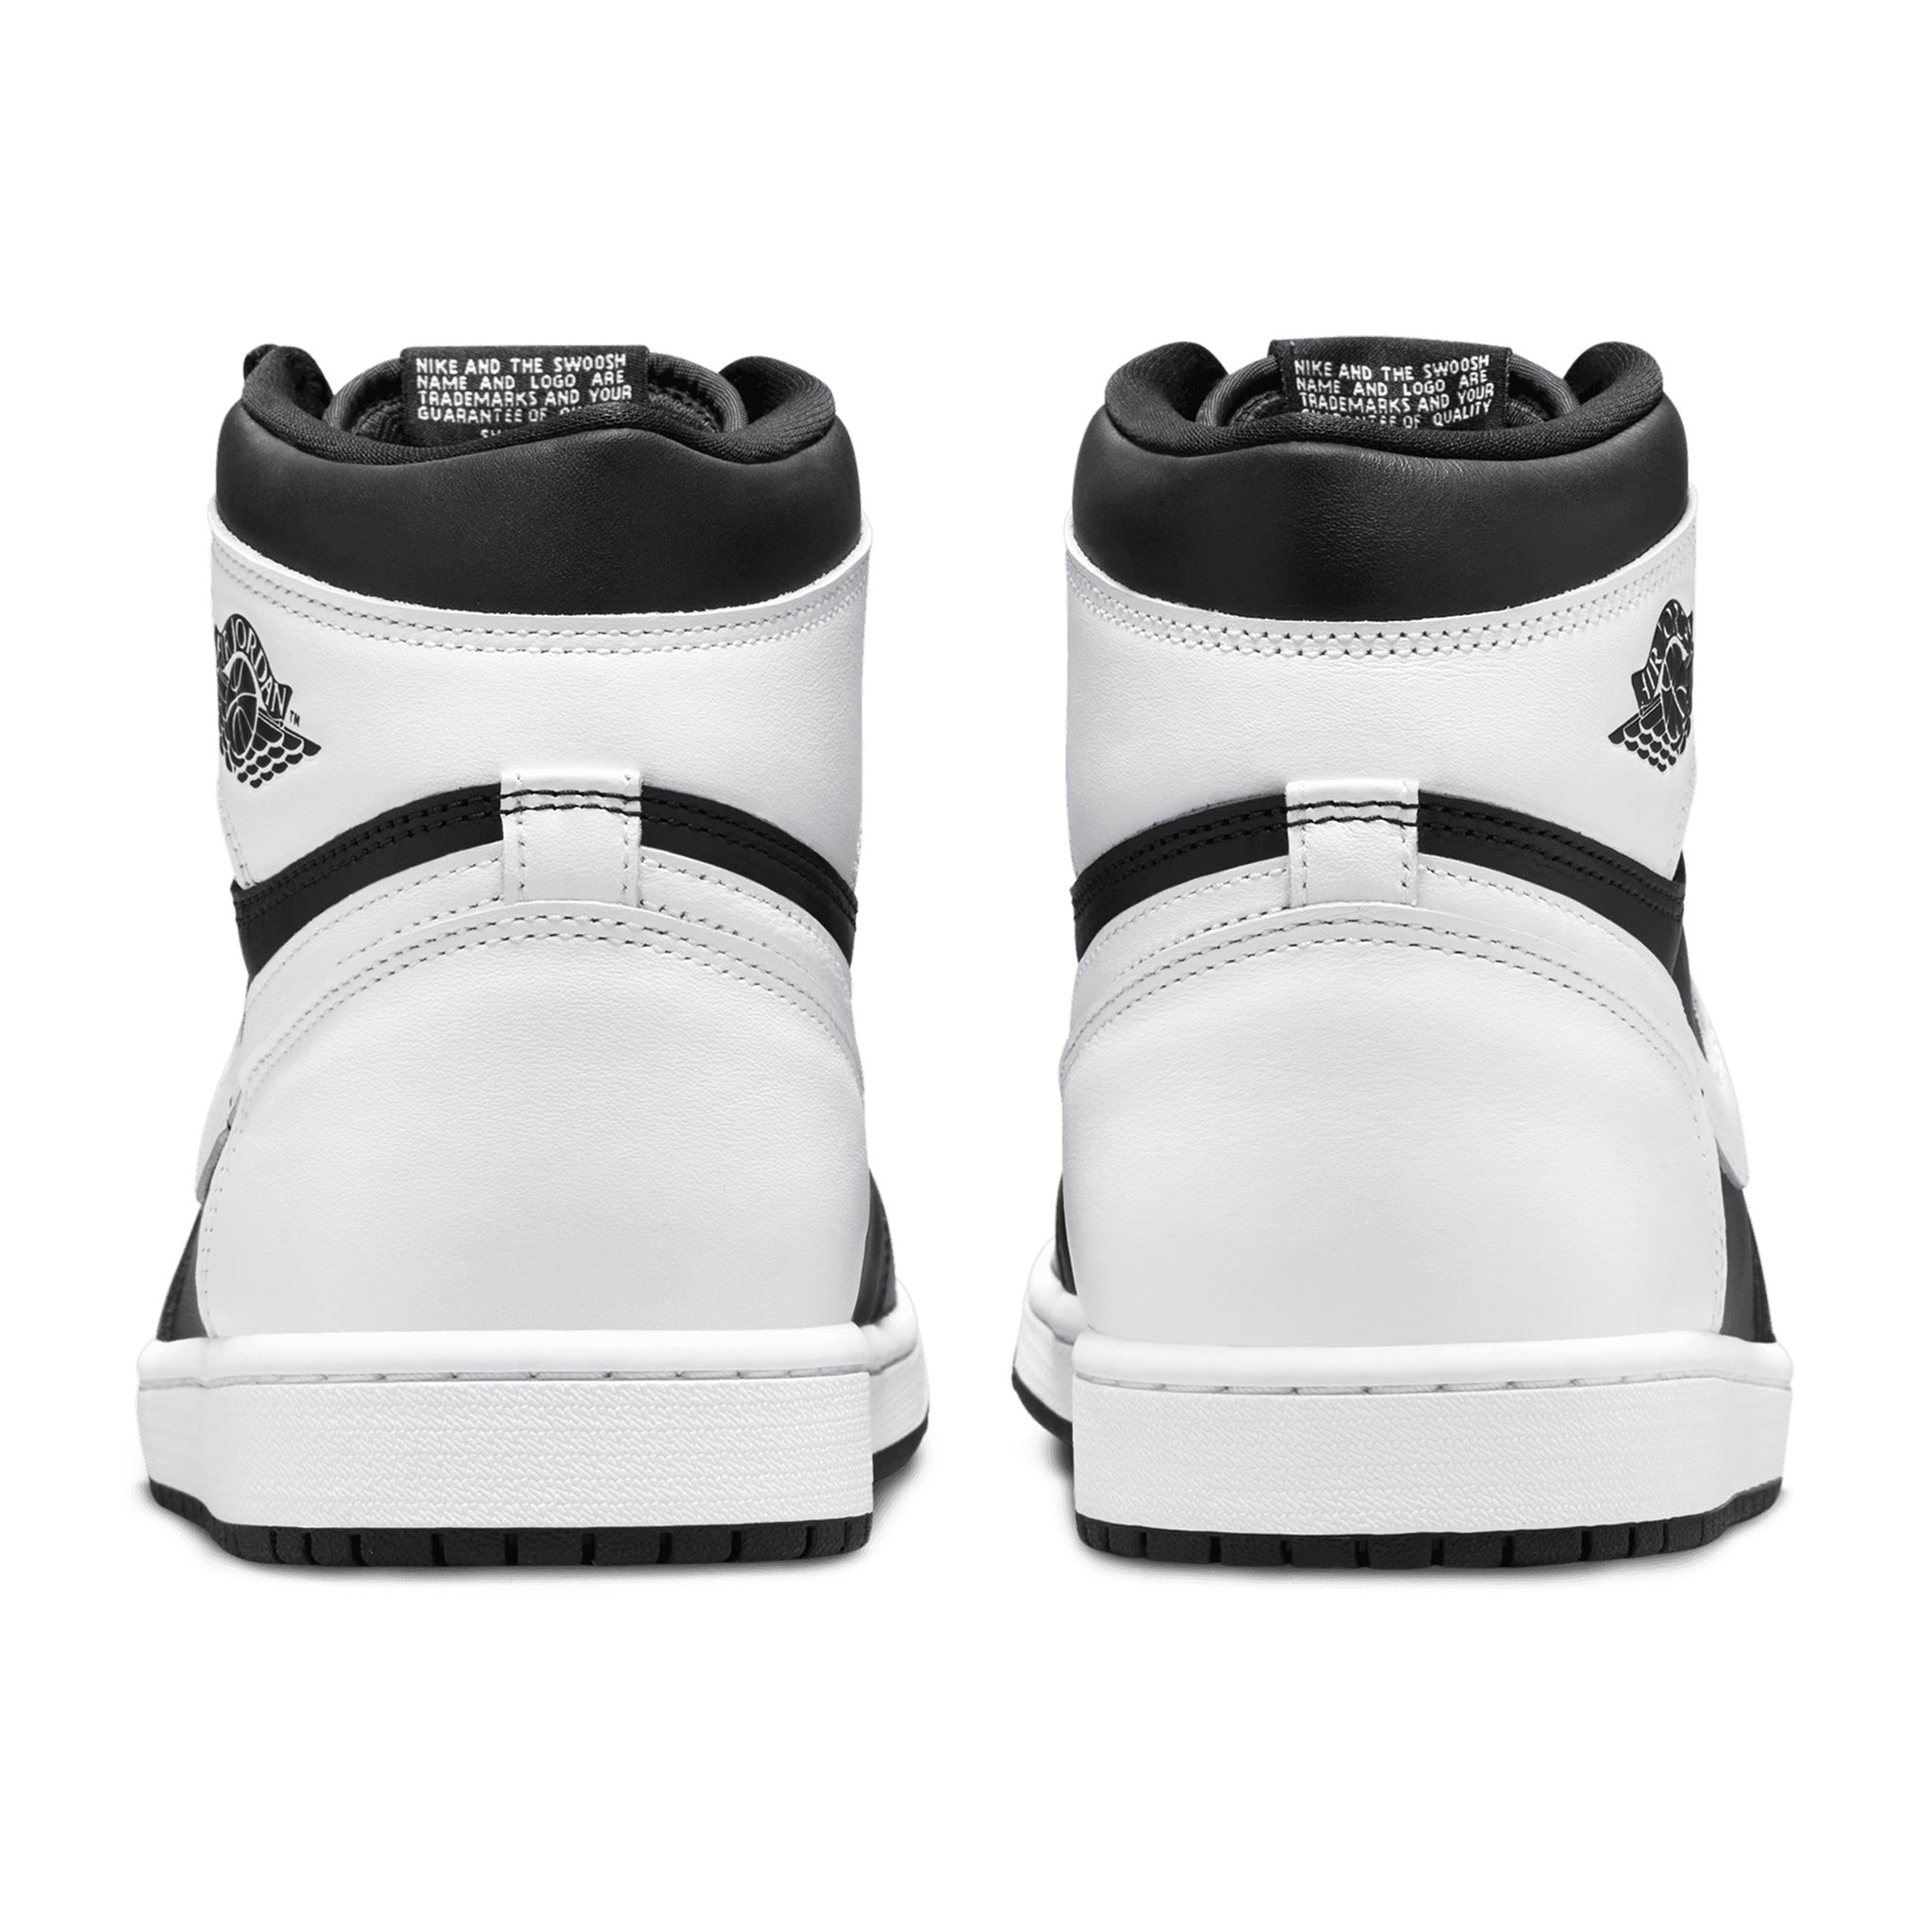 Air Jordan 1 Retro High OG Black/White-White DZ5485-010